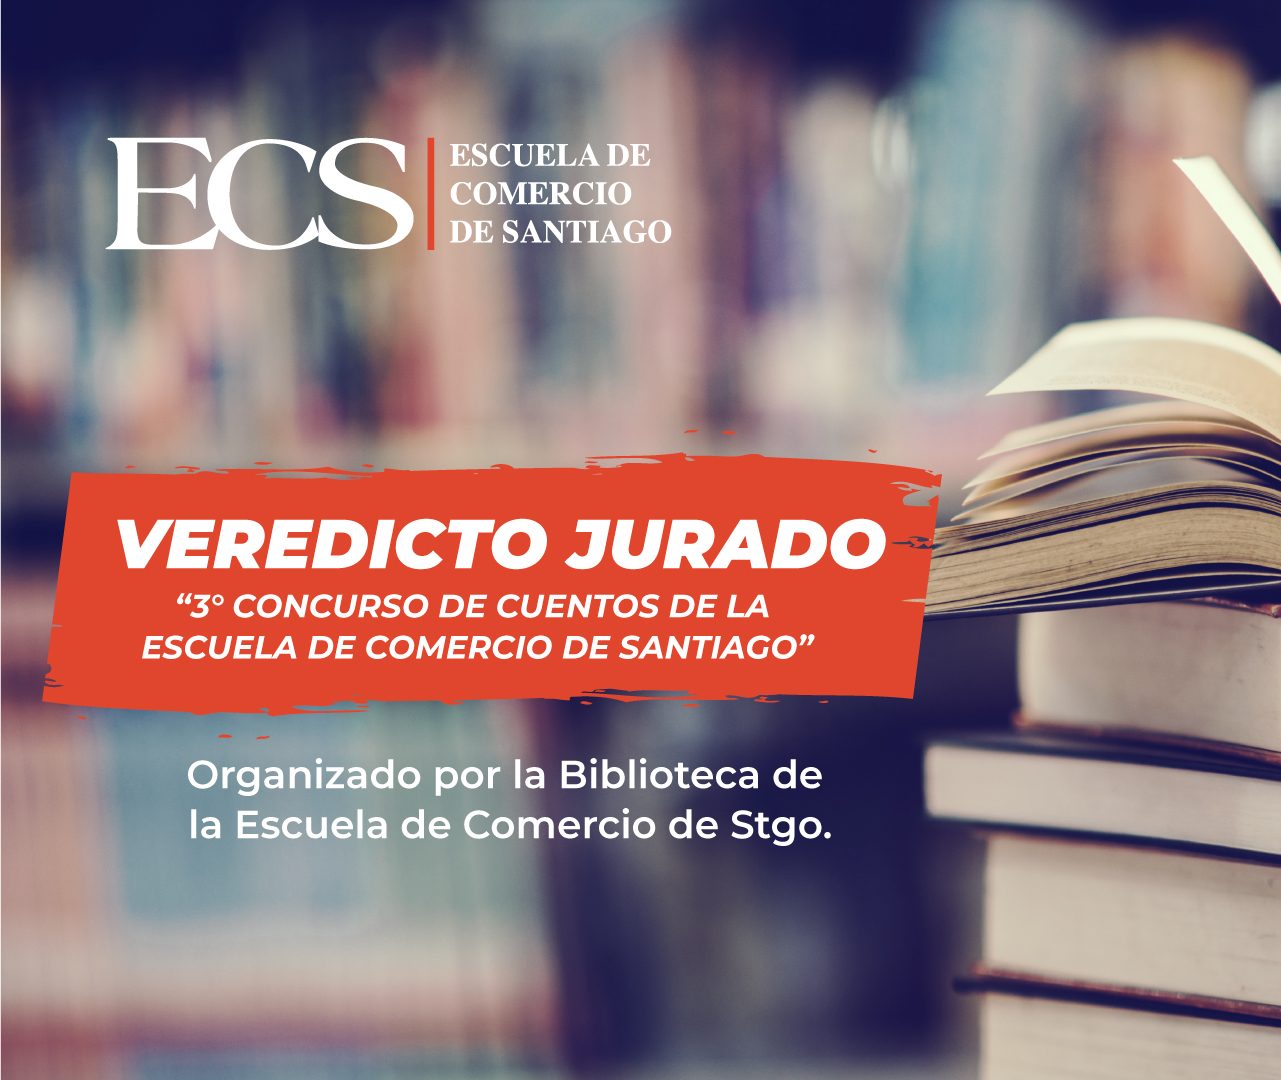 Escuela de Comercio - Biblioteca Arnoldo Imalay Fuentes